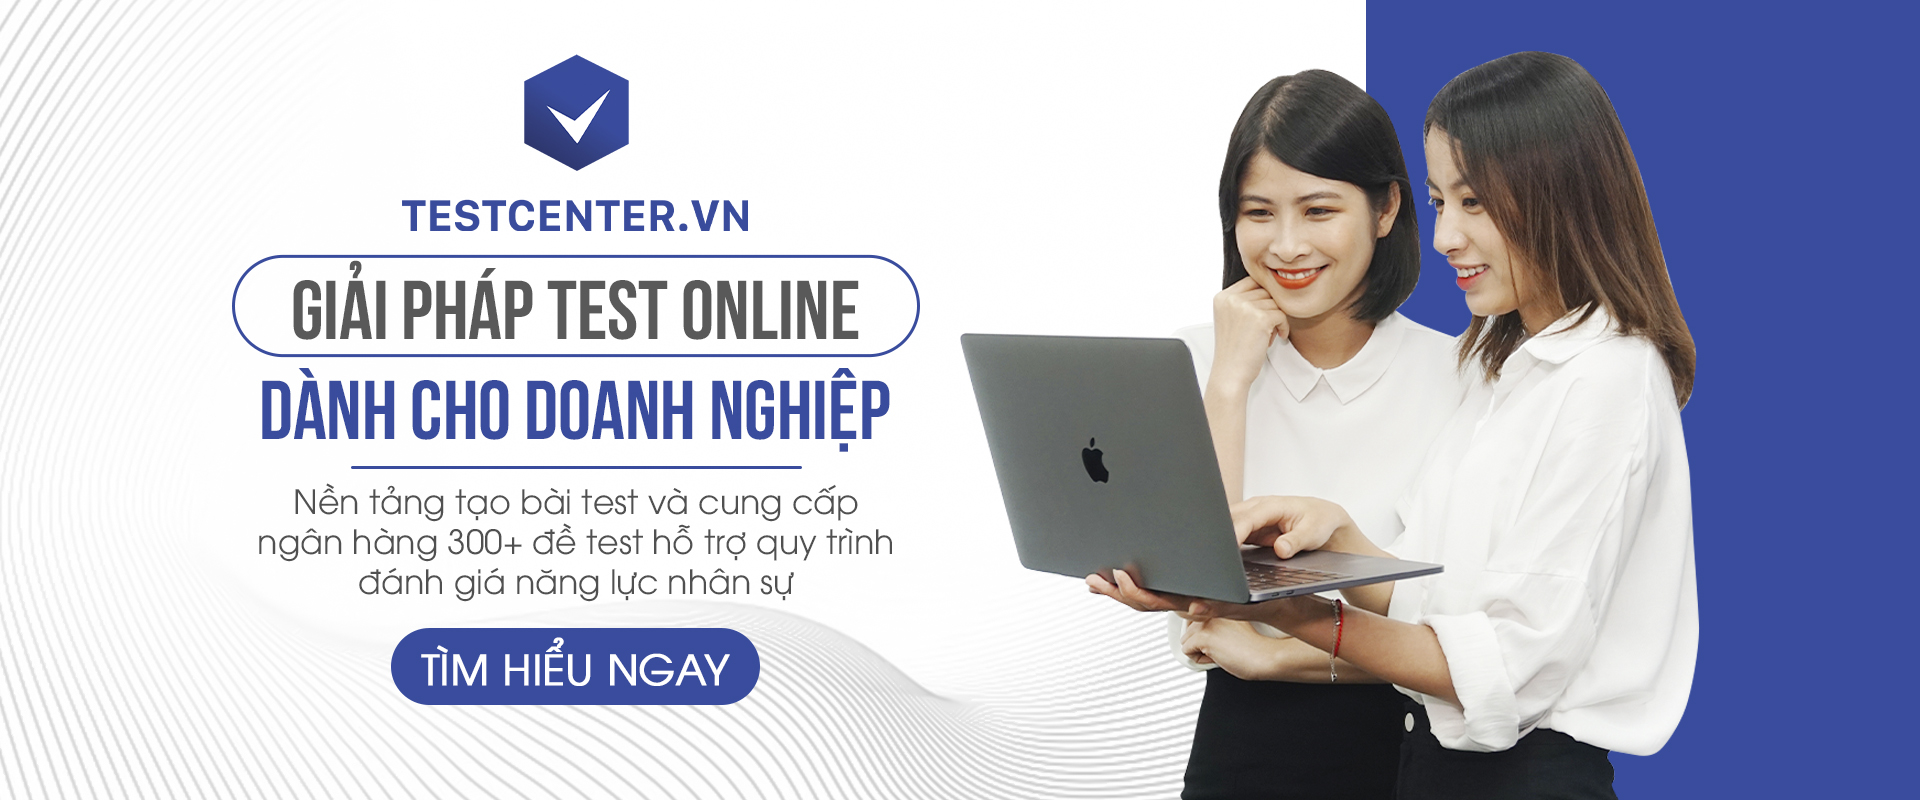 testcenter giải pháp test online dành cho doanh nghiệp